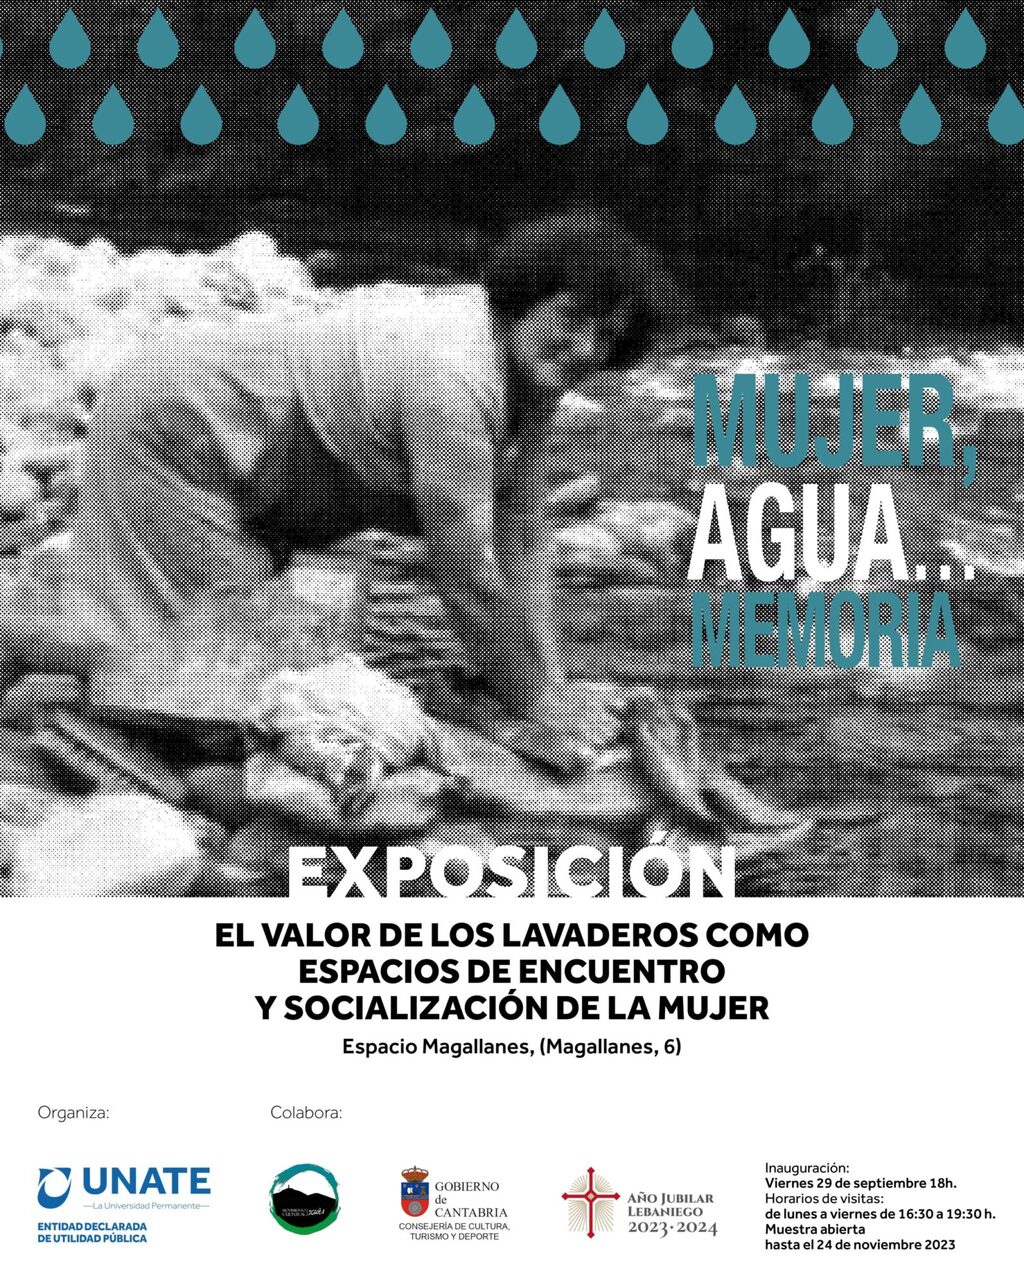 "Mujer, agua...memoria" retrata a la mujer en la sociedad tradicional de Iguña